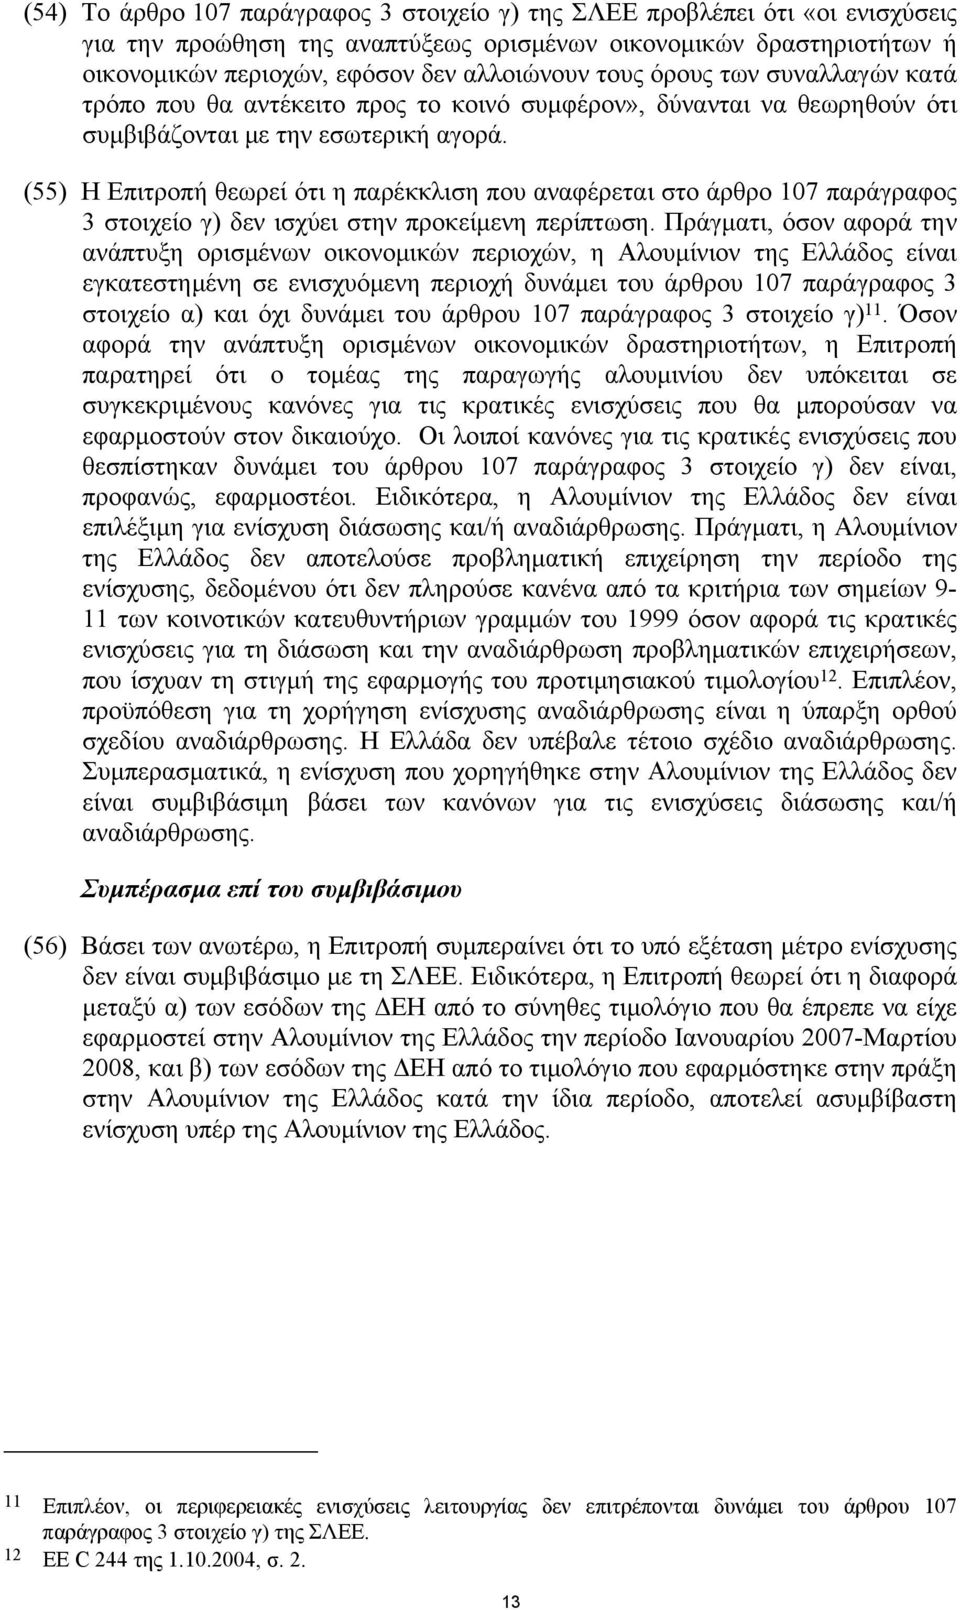 (55) Η Επιτροπή θεωρεί ότι η παρέκκλιση που αναφέρεται στο άρθρο 107 παράγραφος 3 στοιχείο γ) δεν ισχύει στην προκείμενη περίπτωση.